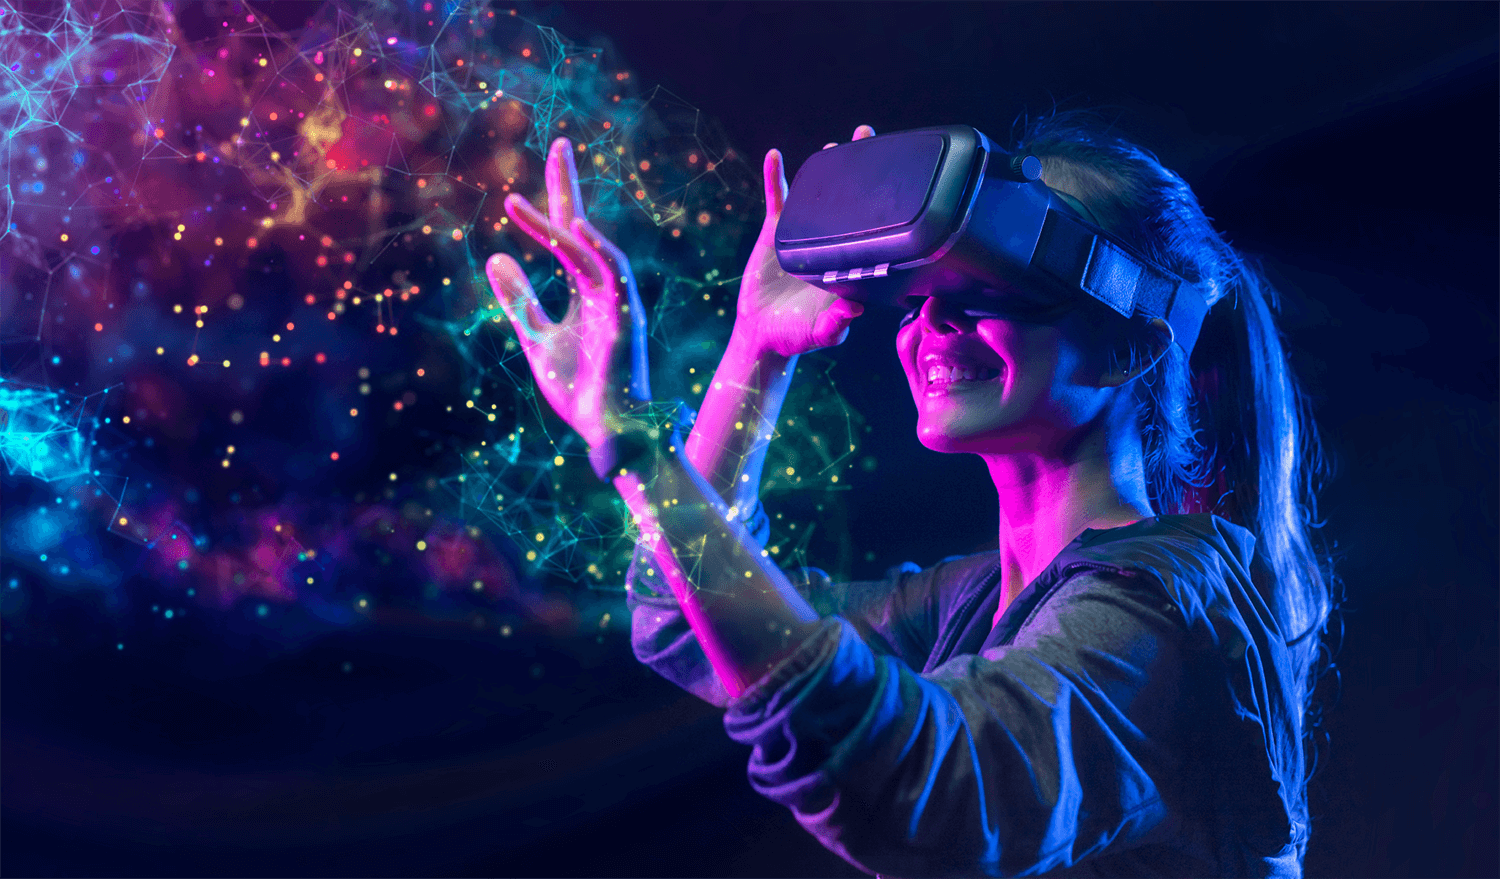 图片展示一位女性戴着虚拟现实头盔，伸手触摸光点，周围是五彩斑斓的数字网络，表情愉悦，仿佛置身虚拟世界。